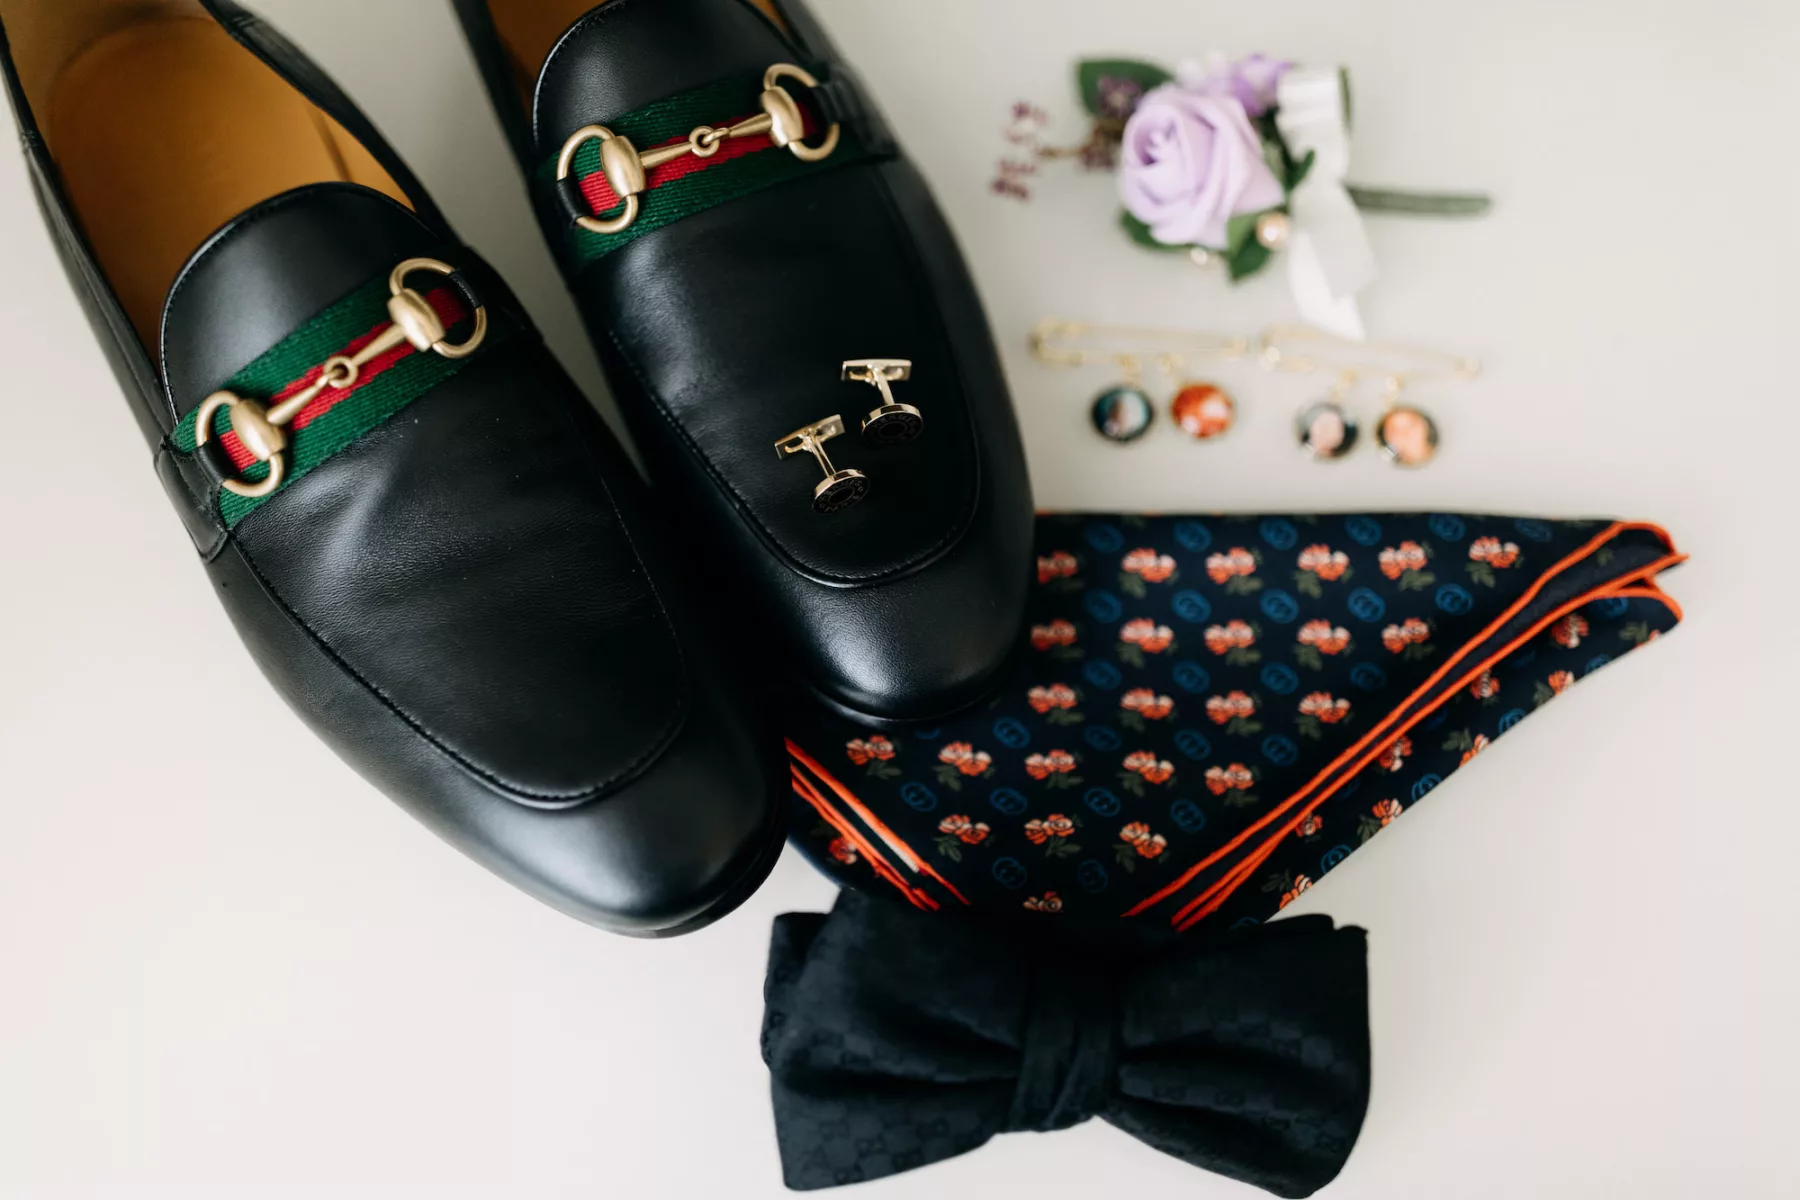 Groom Black Leather Gucci Loafer Wedding Shoe Inspiration